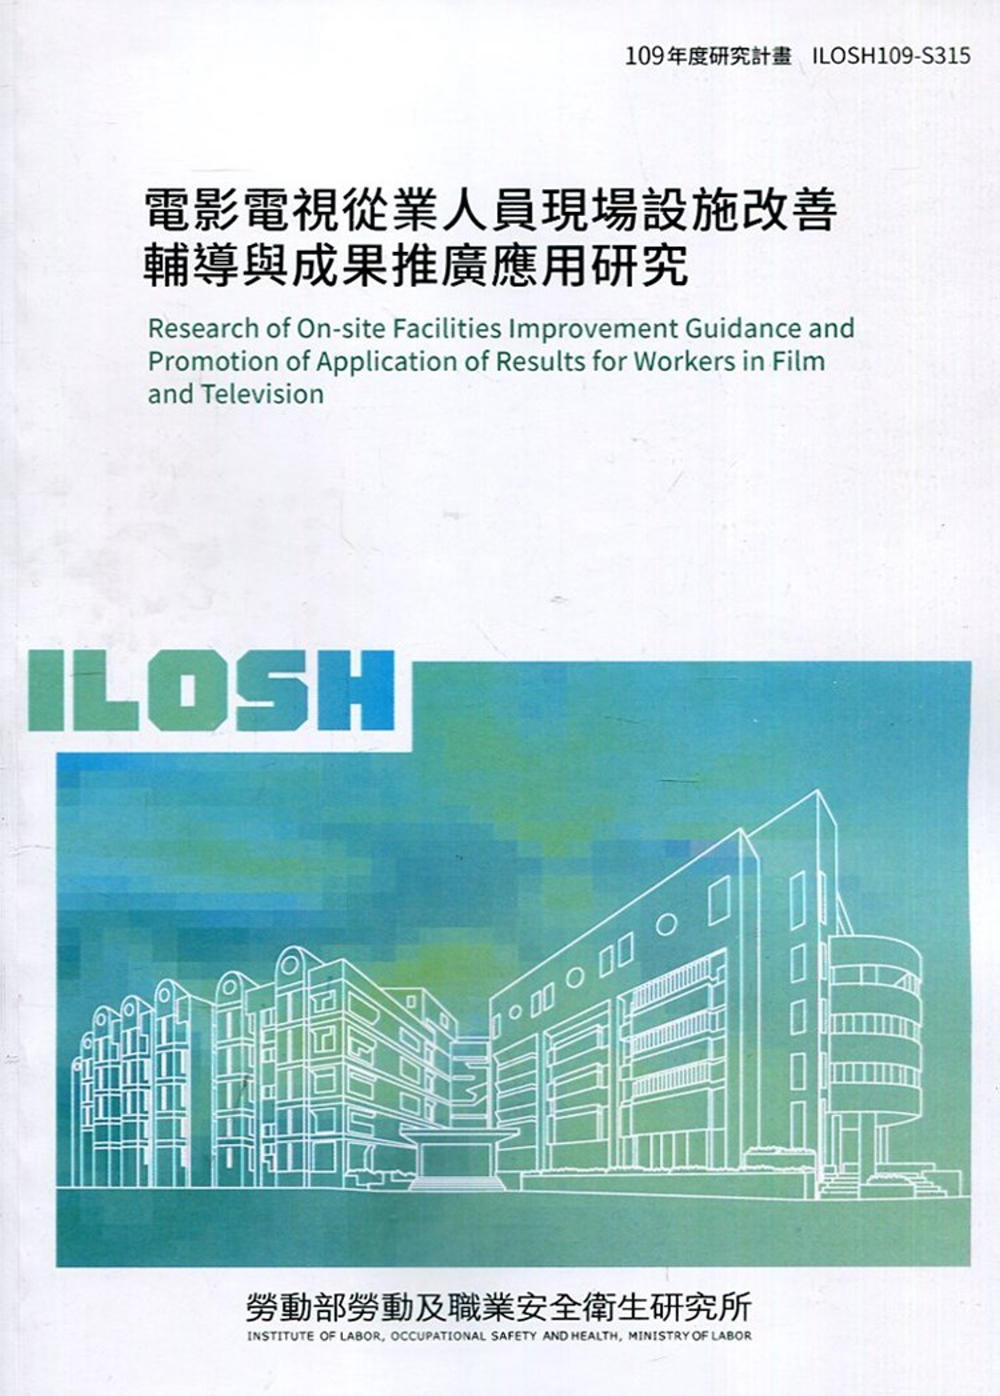 電影電視從業人員現場設施改善輔導與成果推廣應用研究 ILOSH109-S315